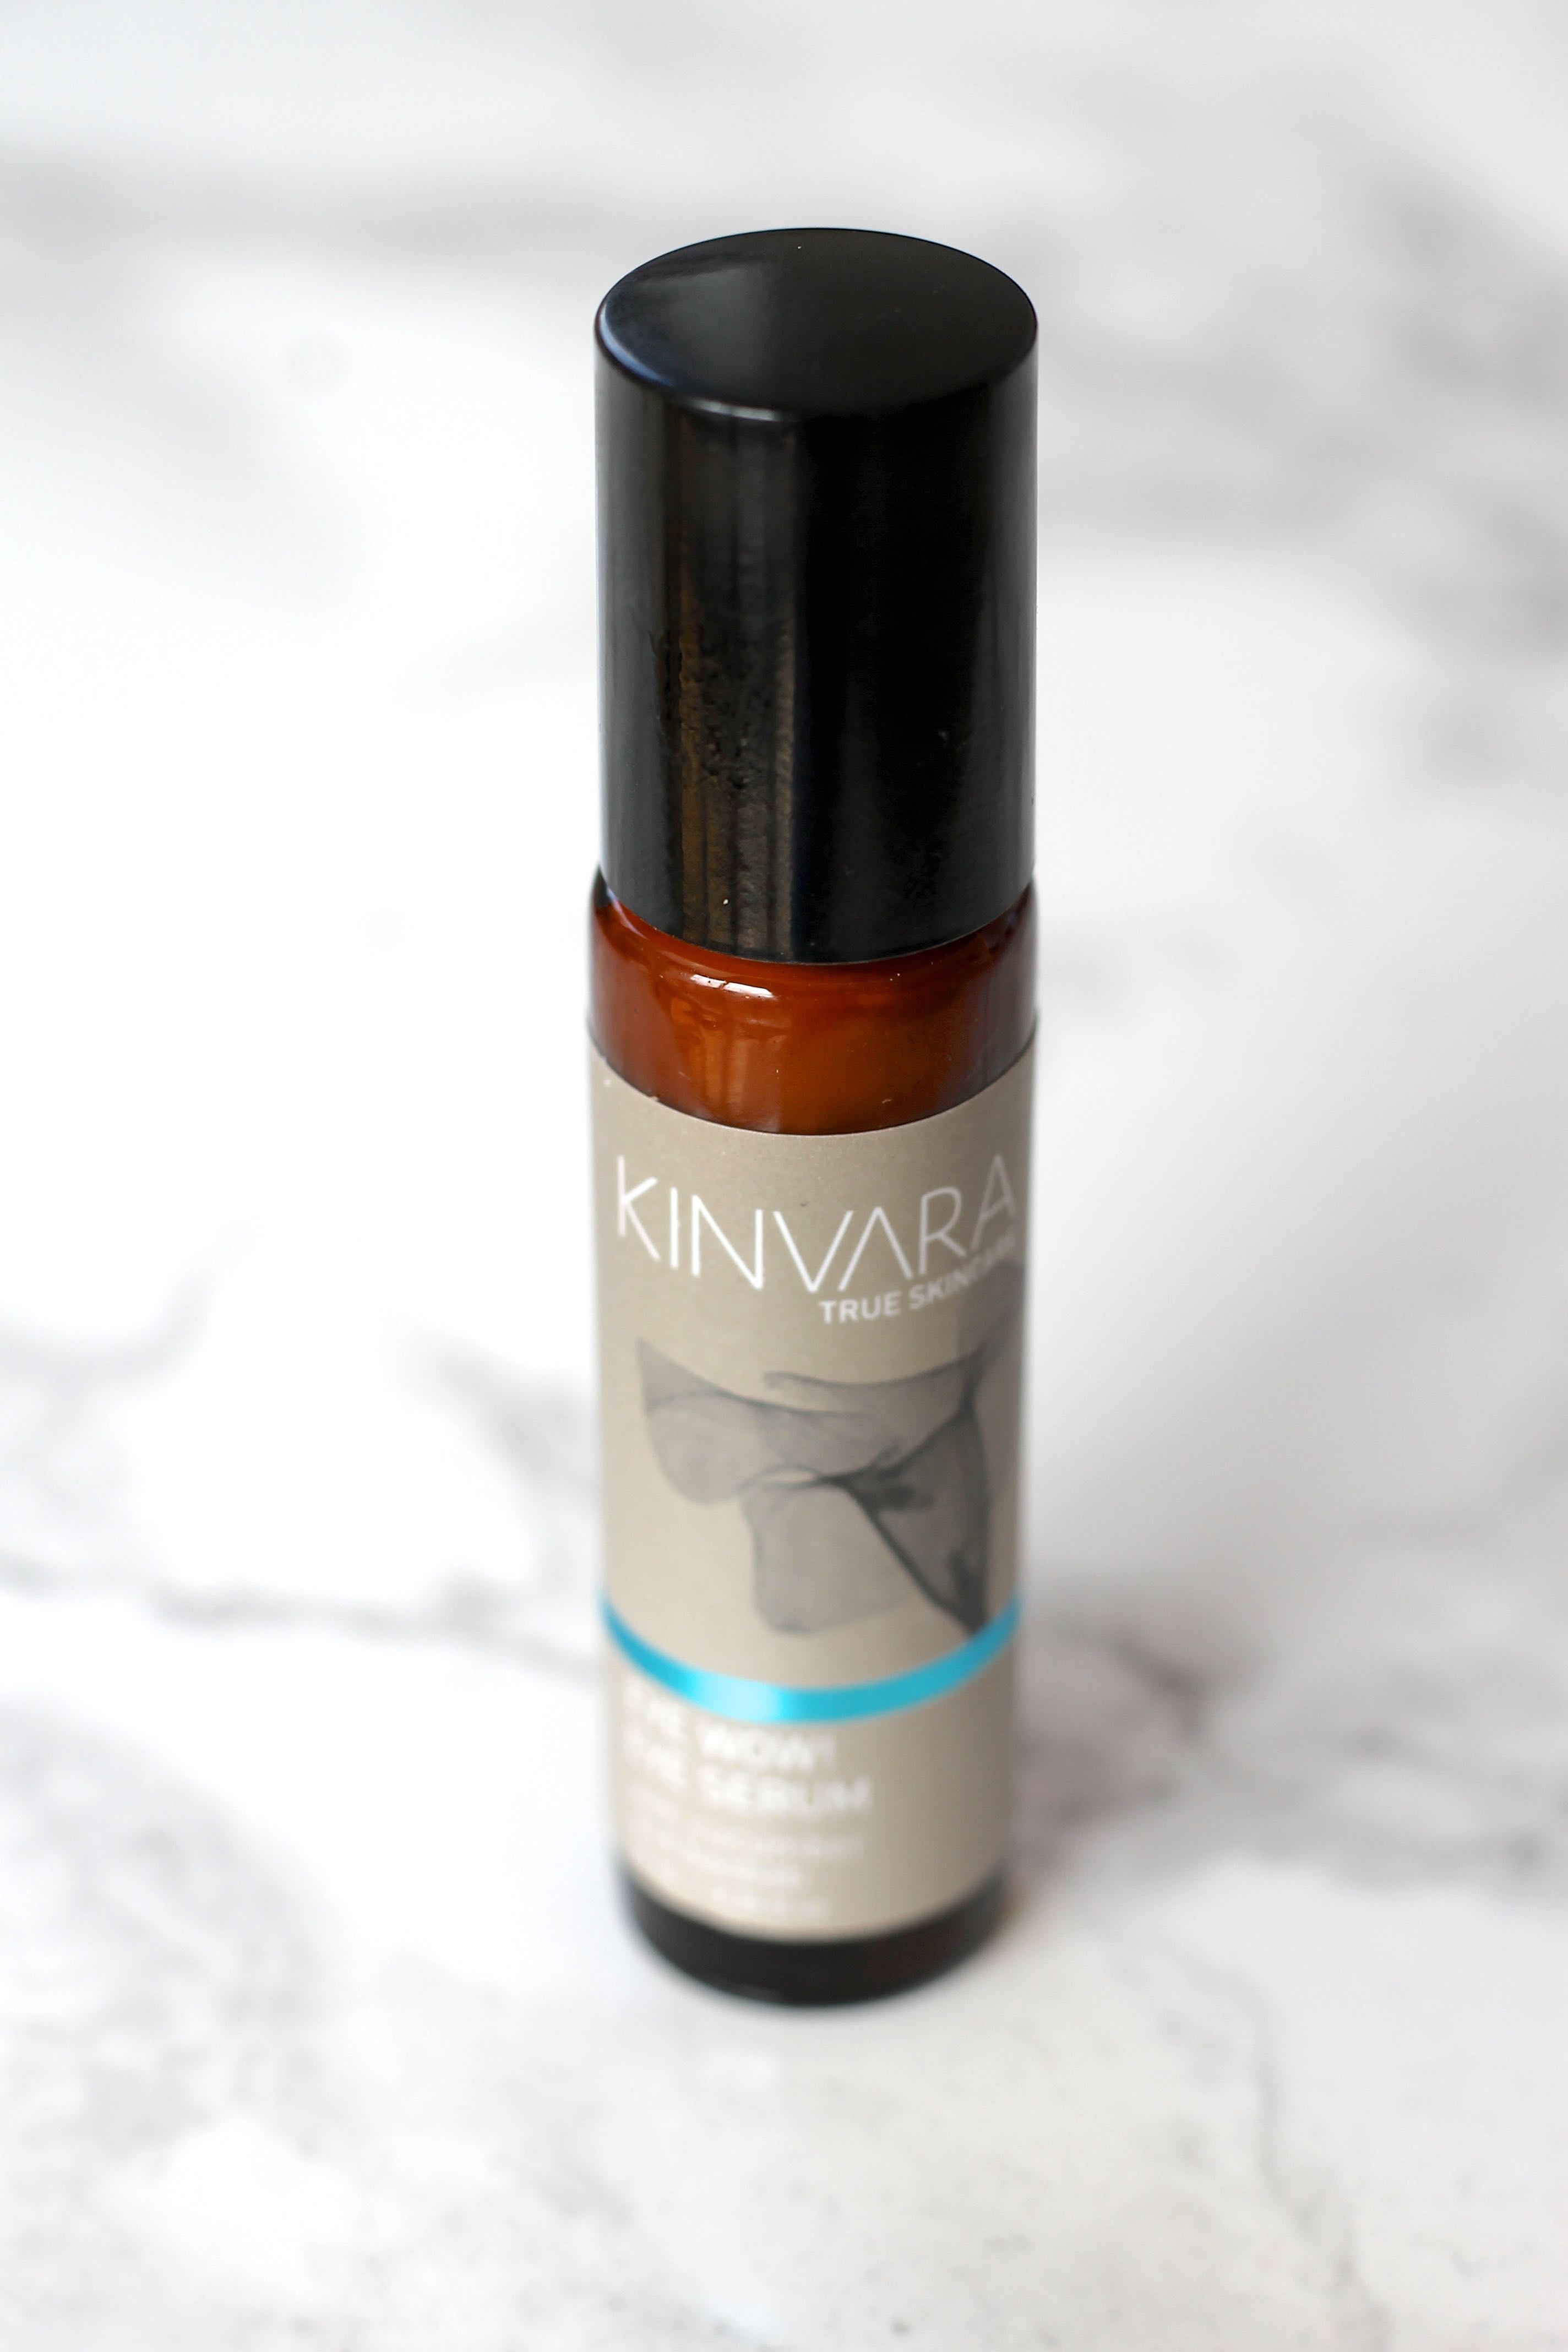 Kinvara skincare eye serum